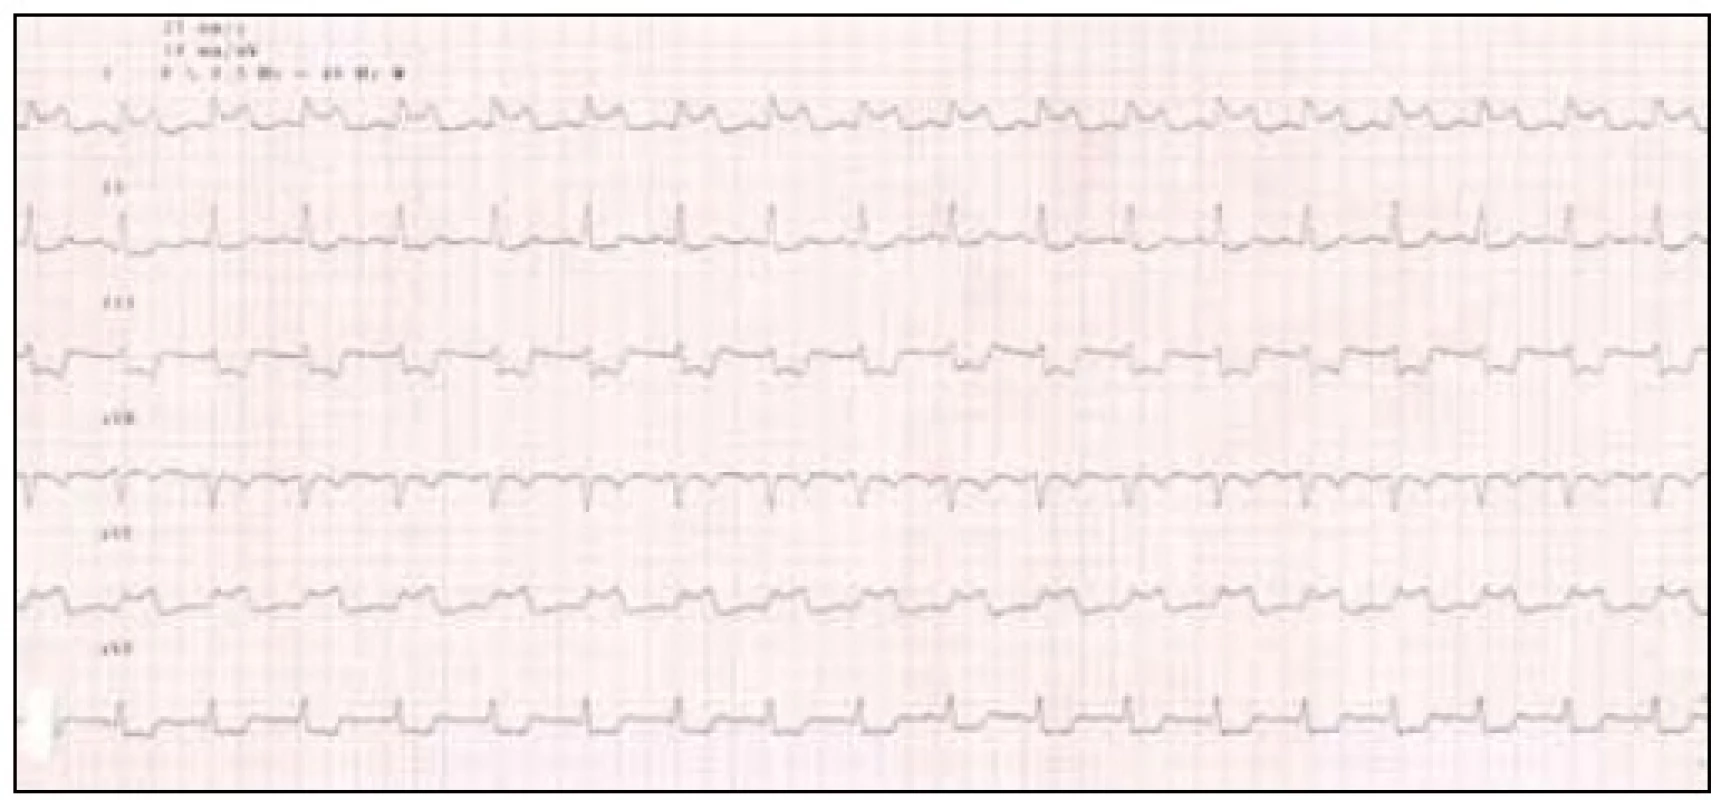 EKG končetinové svody, pozitivní nález při hyperventilačním testu.